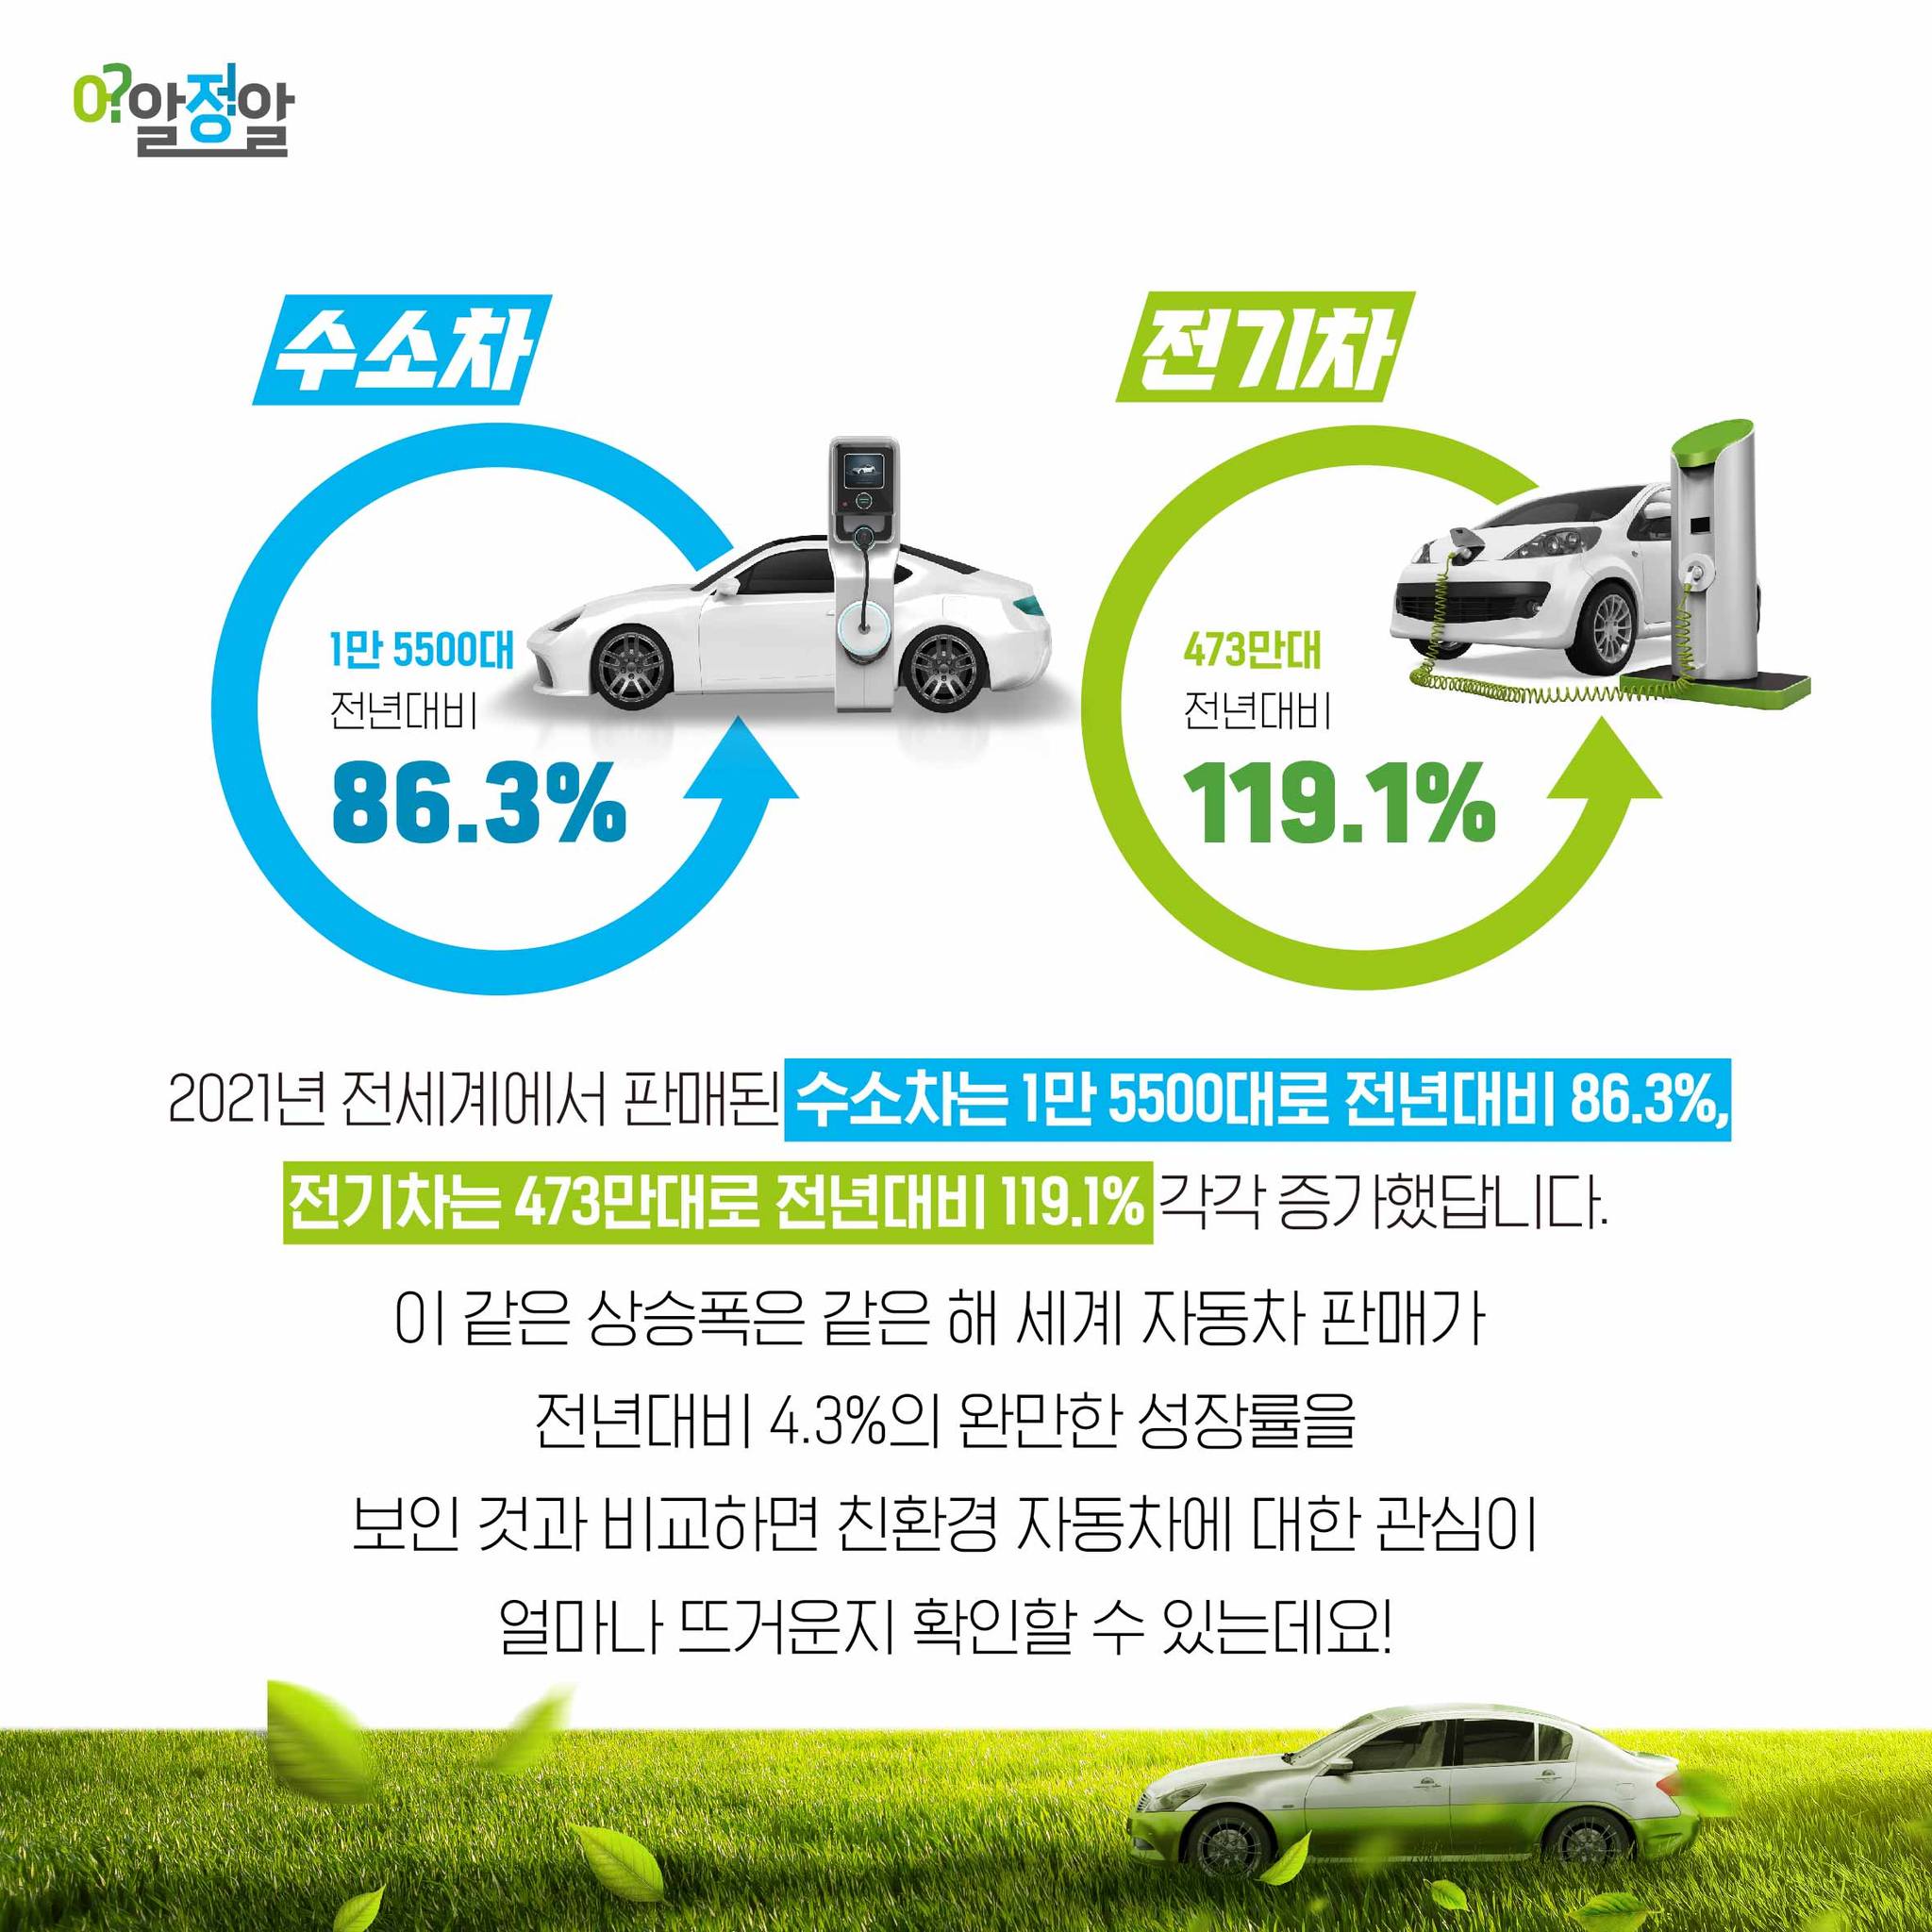 2021년 전세계에서 판매된 수소차는 1만 5500대로 전년대비 86.3%,  전기차는 473만대로 전년대비 119.1% 각각 증가했답니다.  이 같은 상승폭은 같은 해 세계 자동차 판매가  전년대비 4.3%의 완만한 성장률을  보인 것과 비교하면 친환경 자동차에 대한 관심이  얼마나 뜨거운지 확인할 수 있는데요!